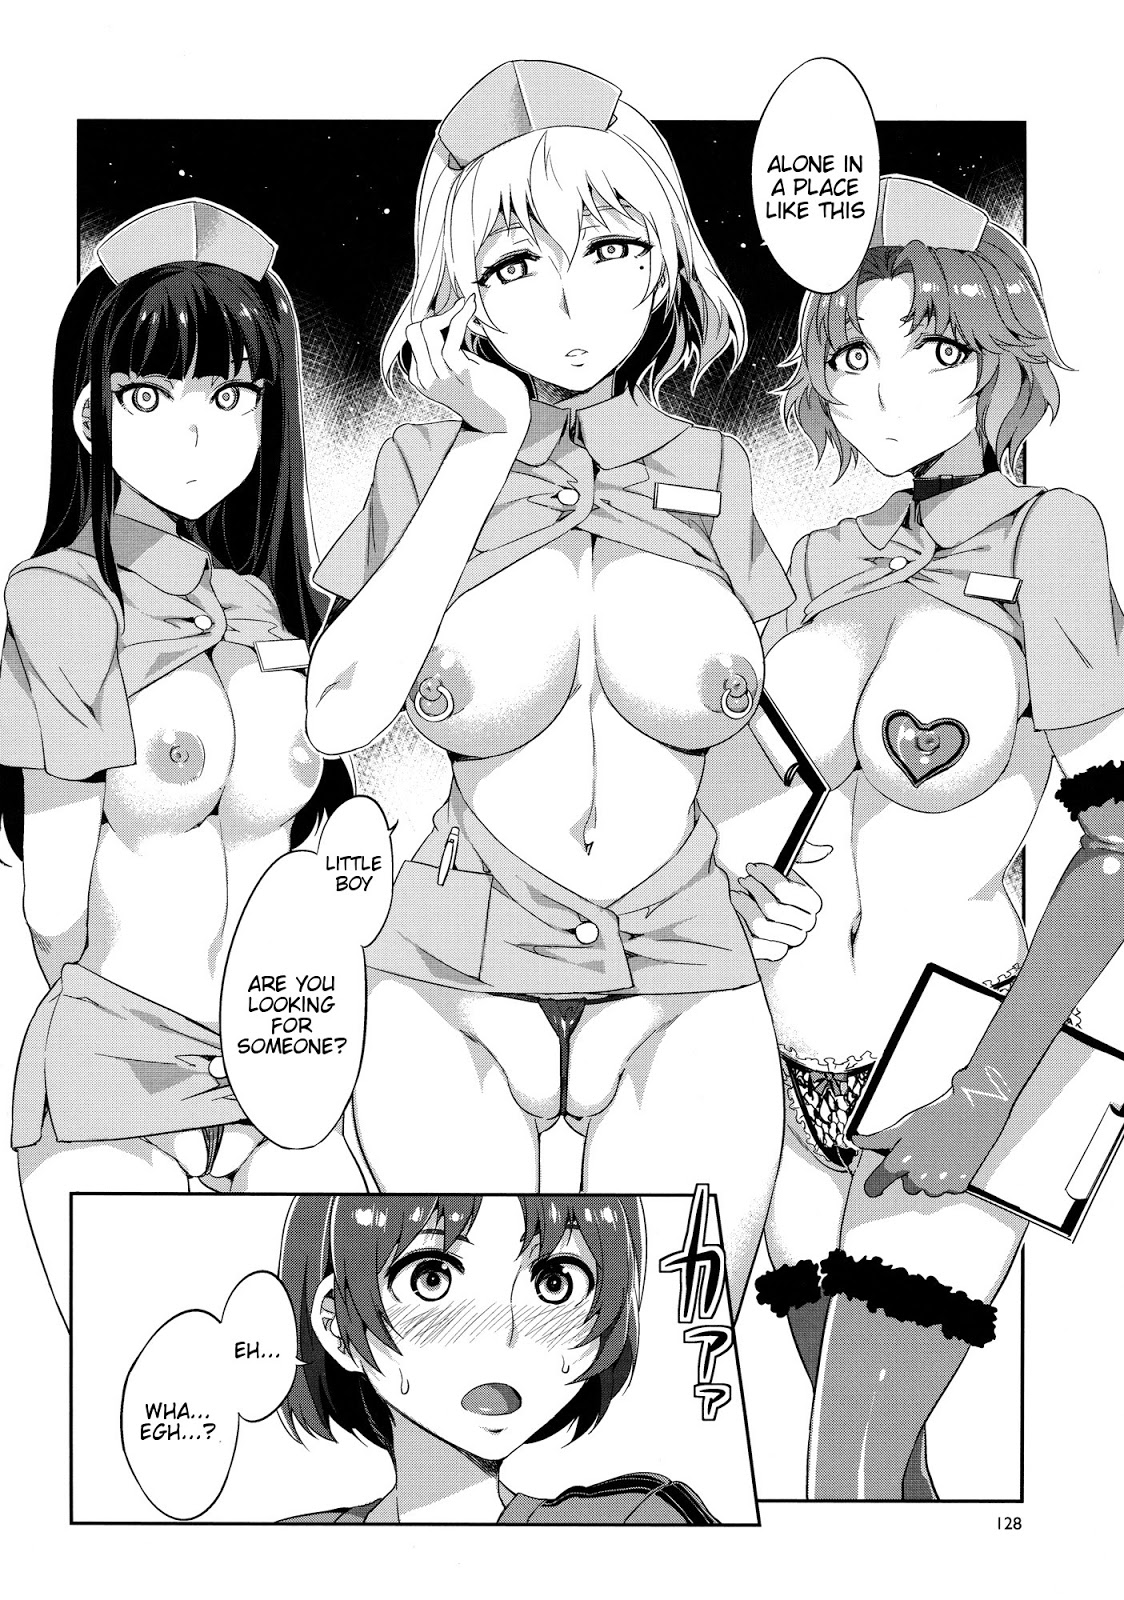 Manga porn free Anime Hentai